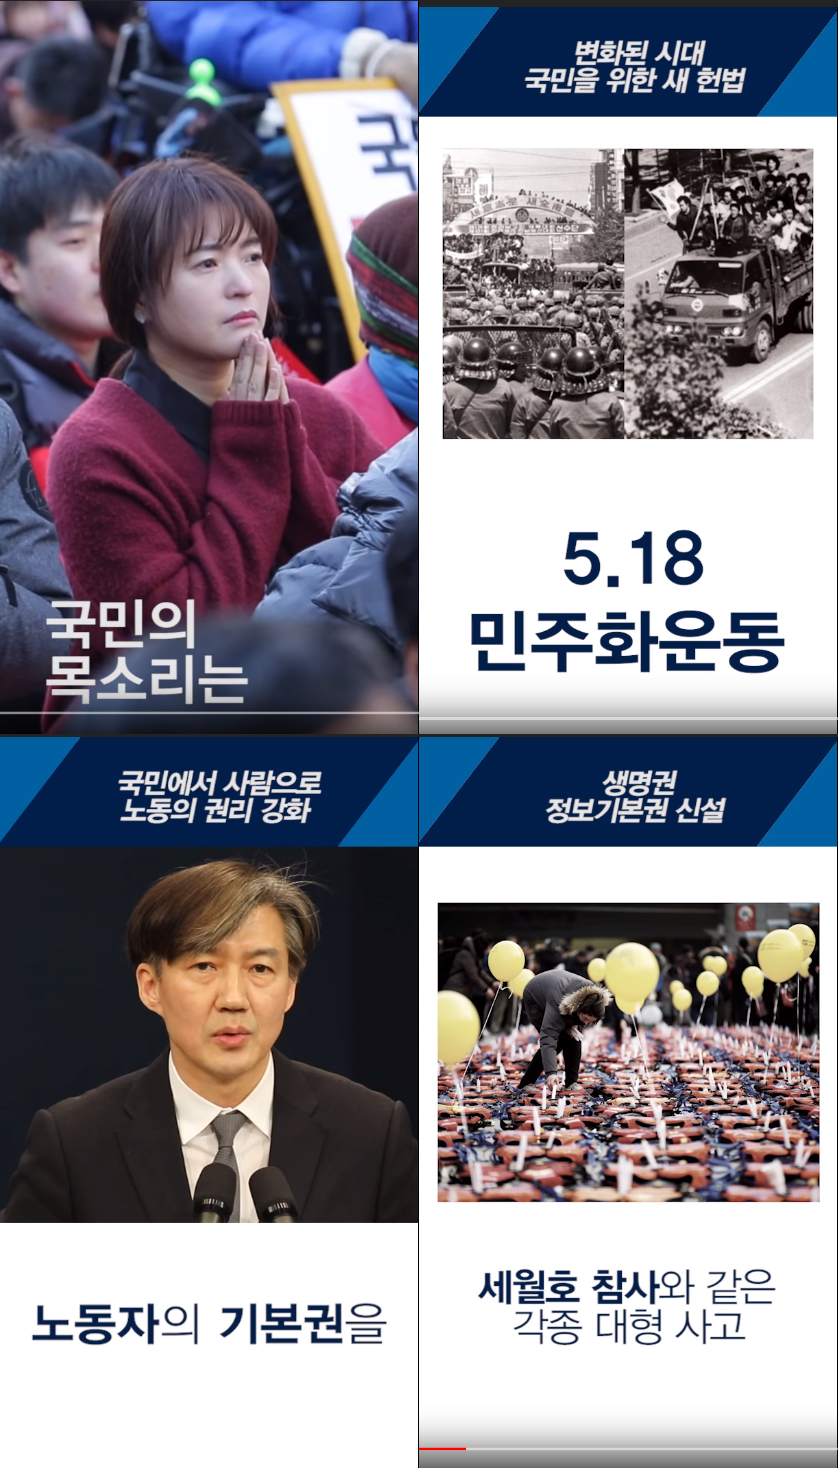 조국민정수석 헌법개정안 요점정리 영상 / 청와대 유튜브 채널